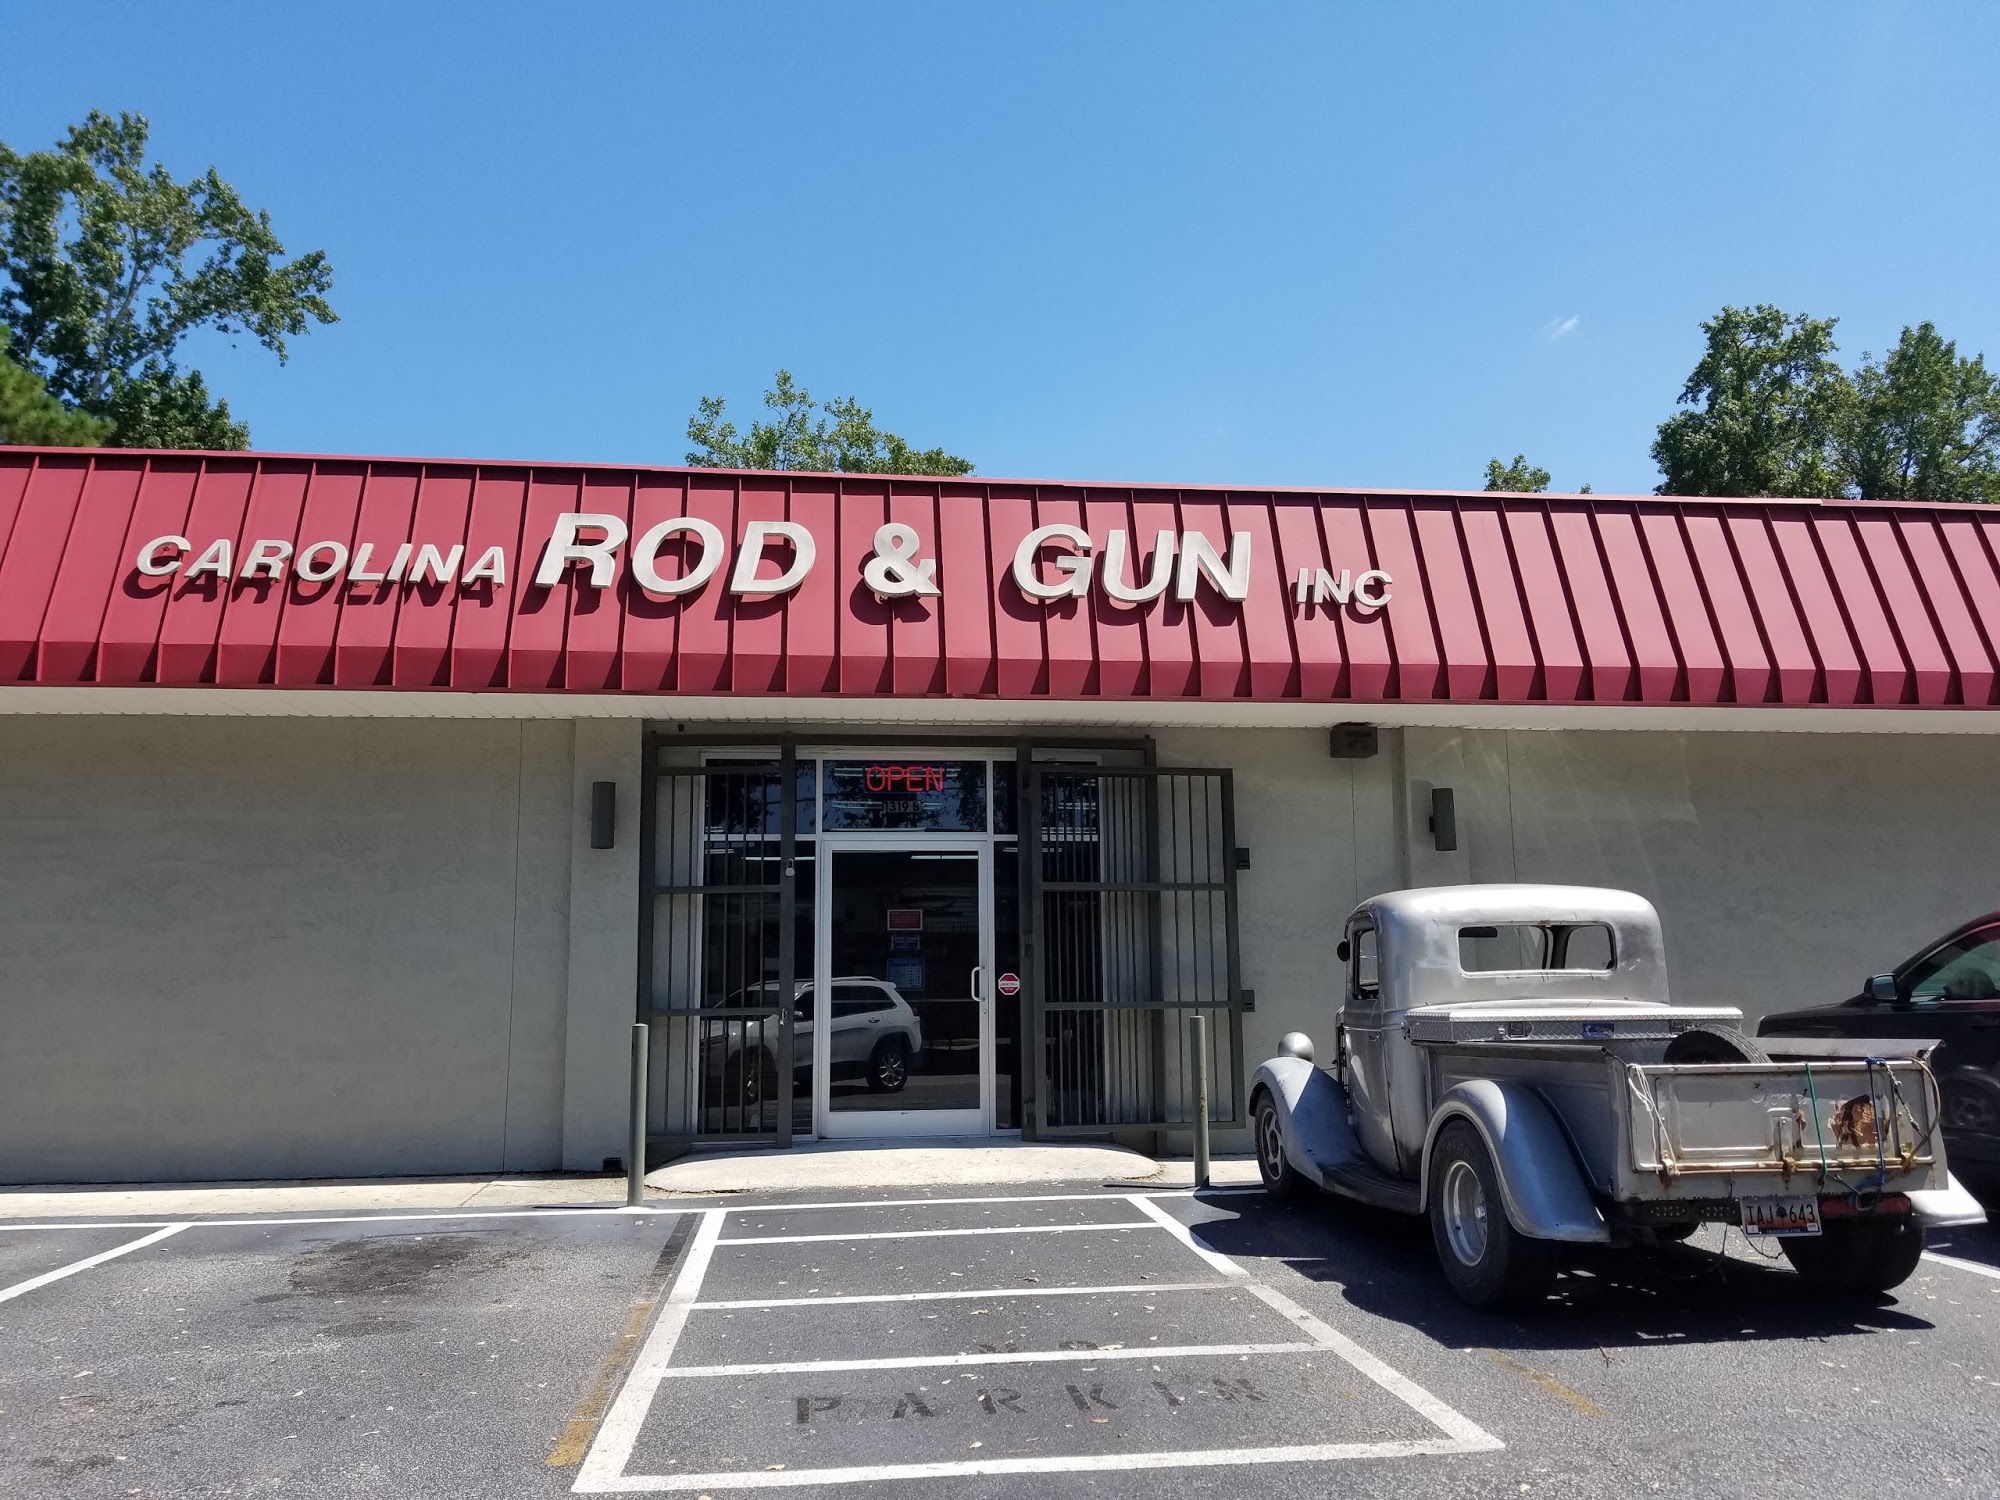 Carolina Rod & Gun Inc